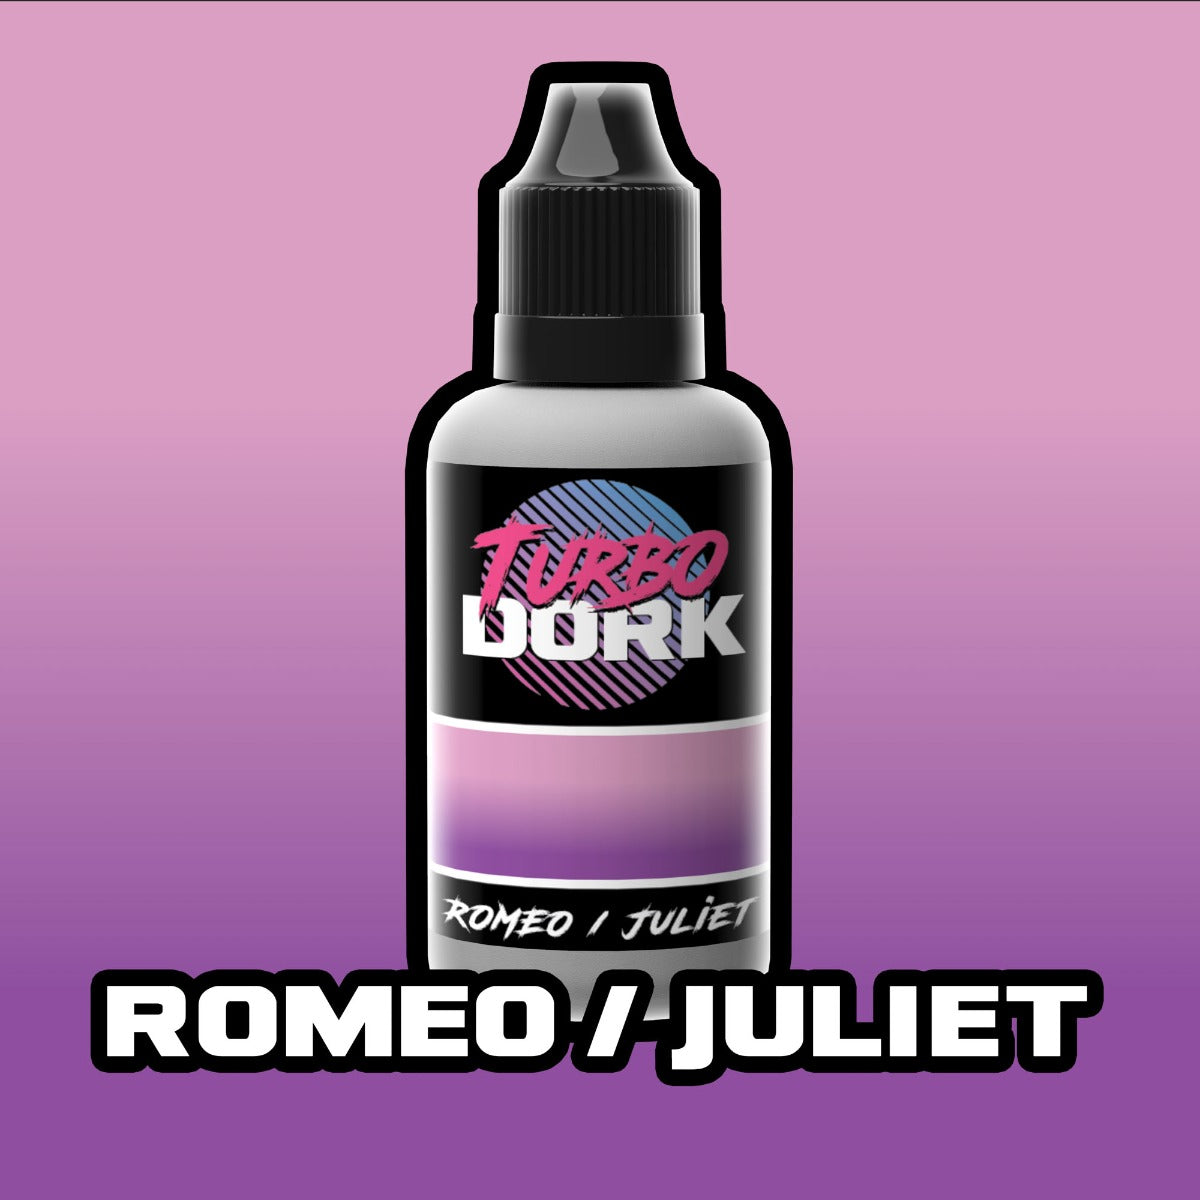 Turbo Dork Romeo / Juliet Turboshift Acrylic Paint 20ml Bottle